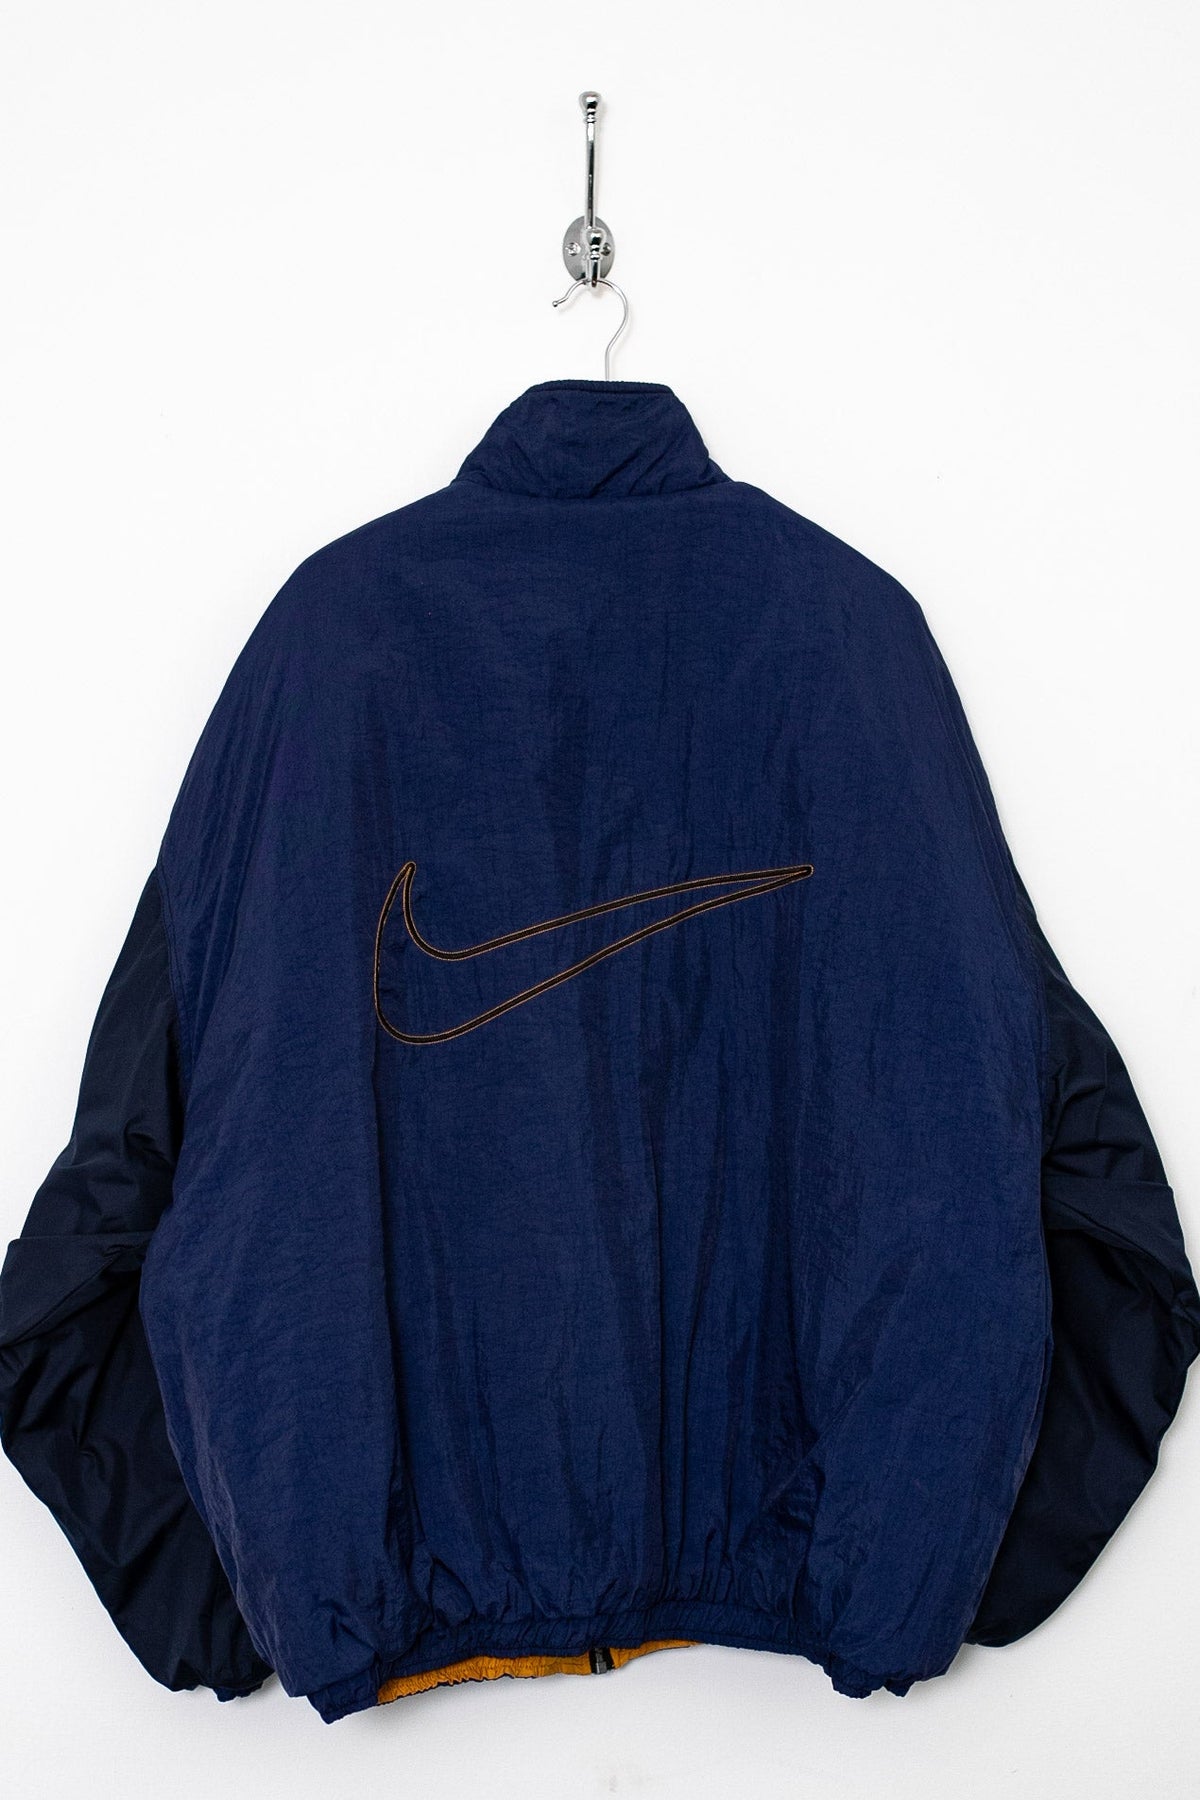 90s Nike Reversible Puffer Jacket (XL)